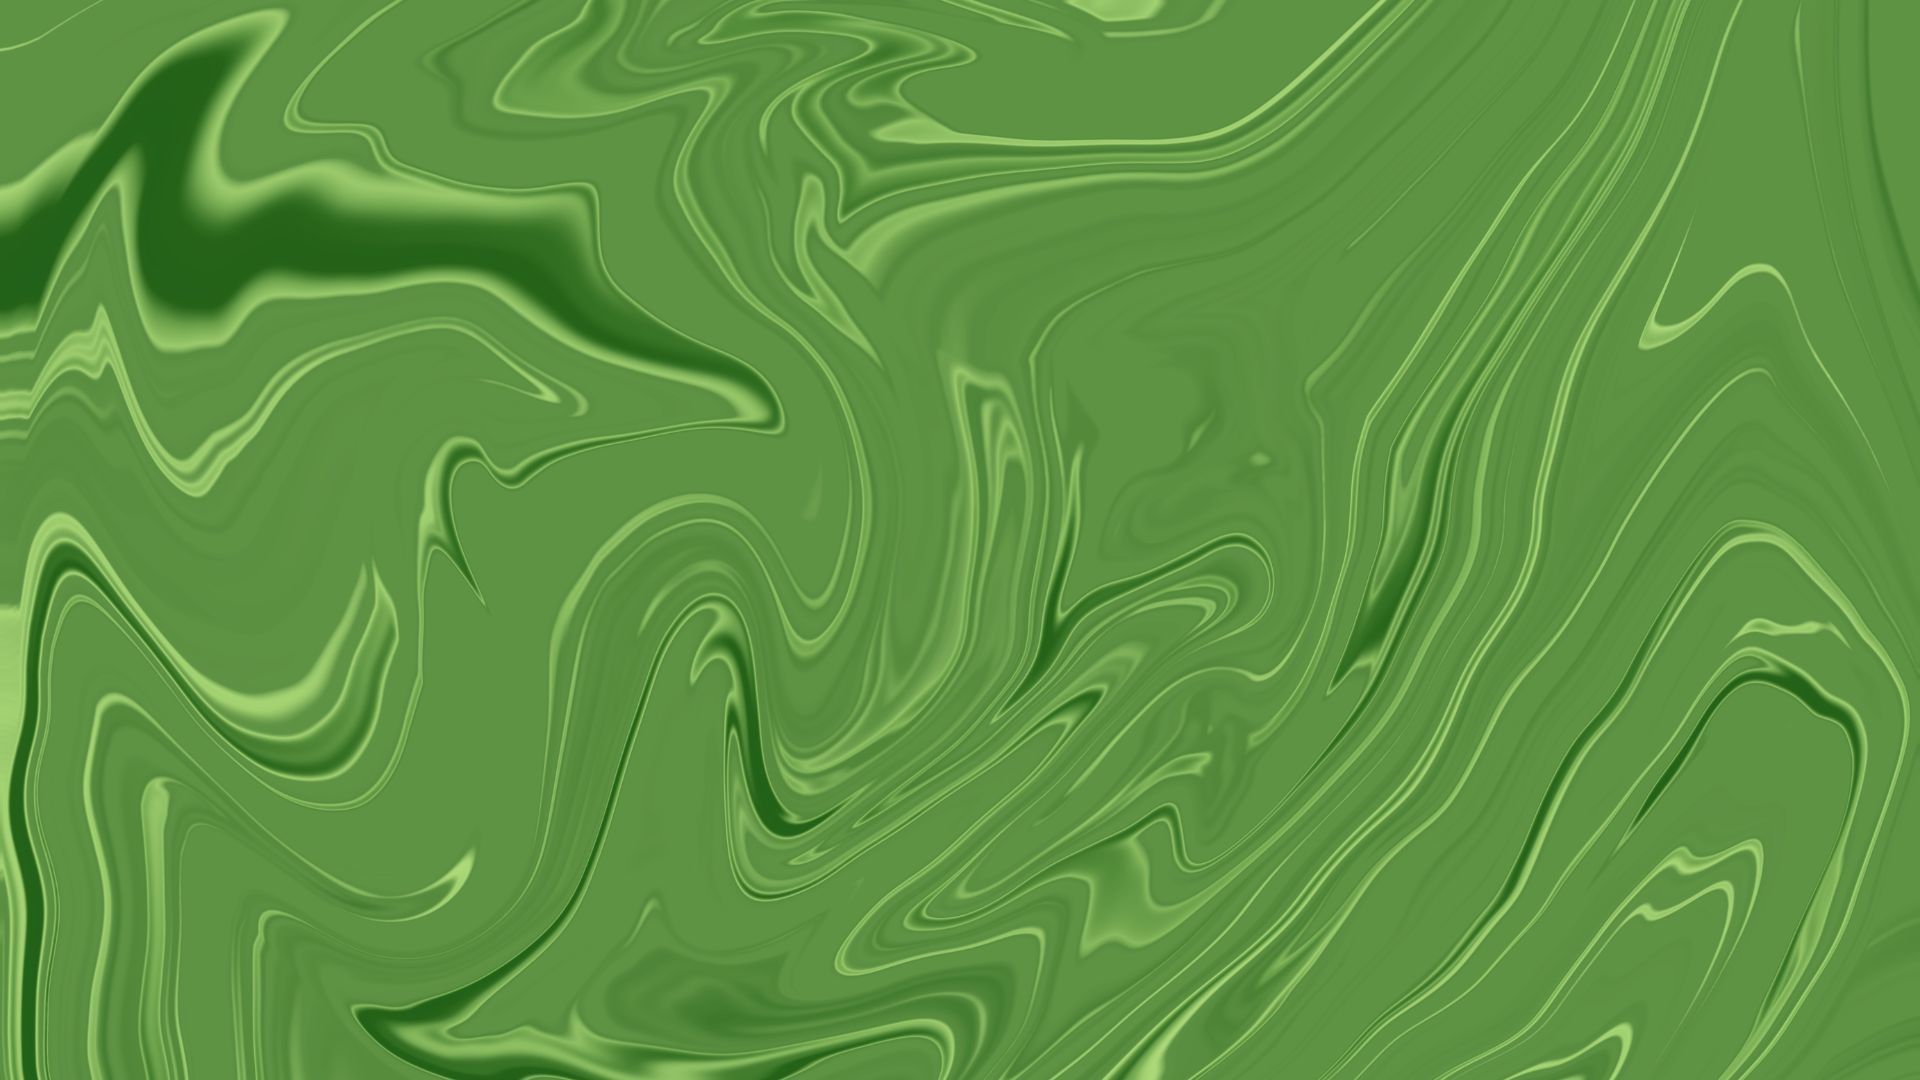 4-wallpaper-aesthetic-verde-desktop-pc-notebook-4k-full-hd